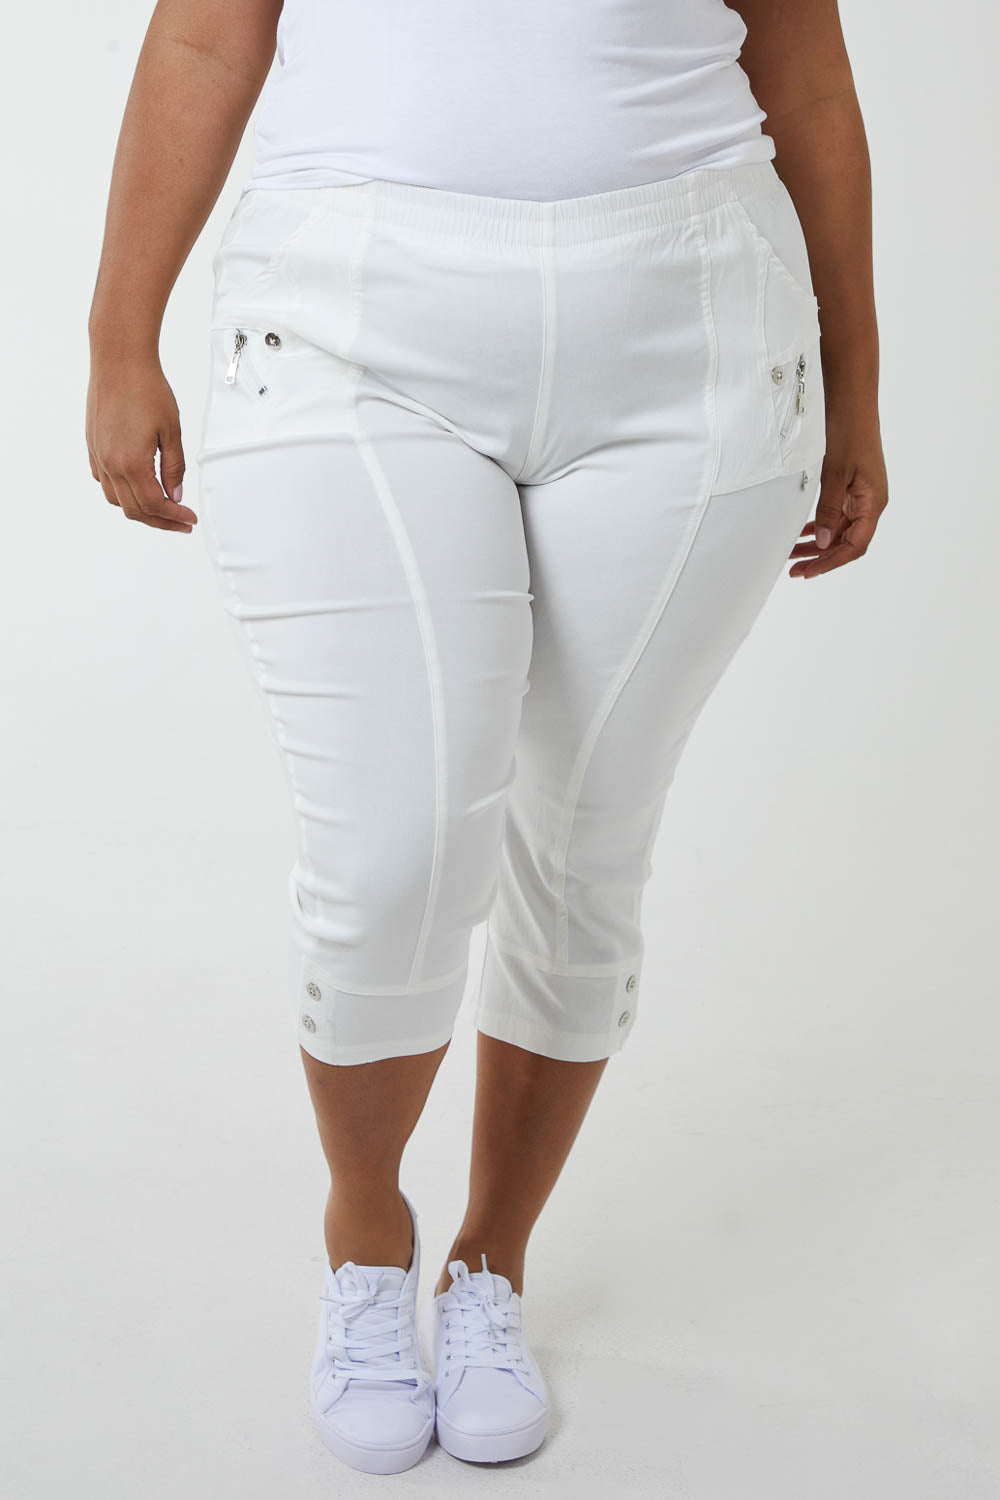 Womens Pants Capris Plus Size Jeans For Women White Curve 120kgs